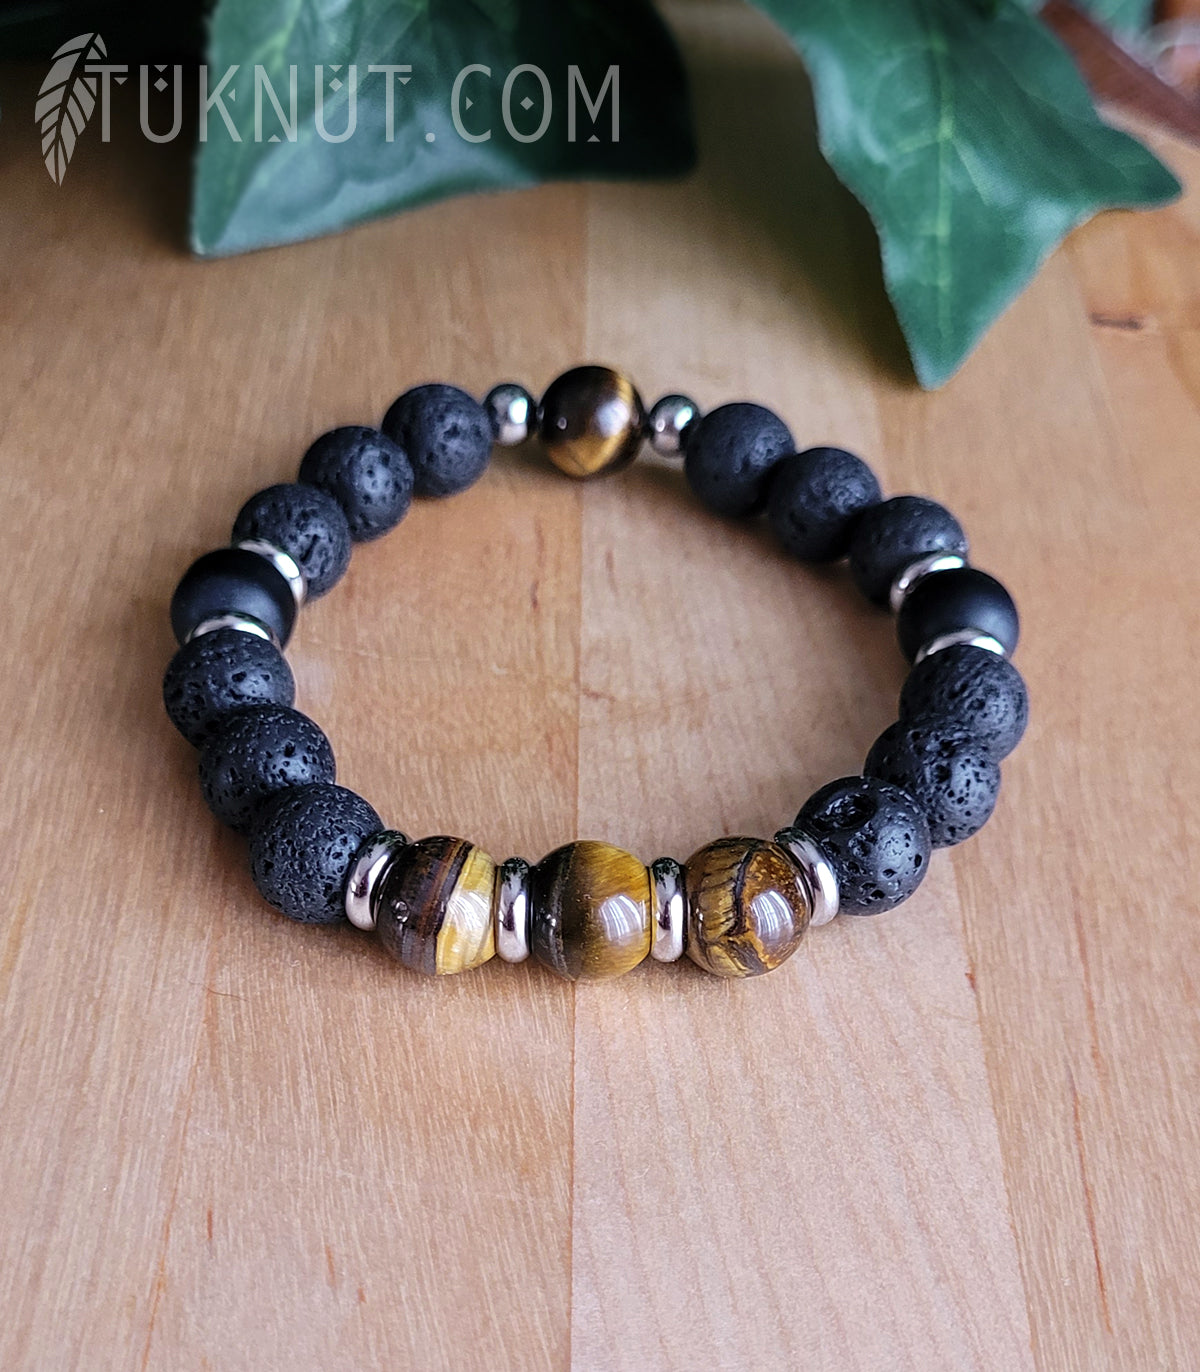 Bracelet extensible avec pierre volcanique, oeil de tigre, onyx et acier inoxydable (couleurs : noir, brun et argent) TUKNUT